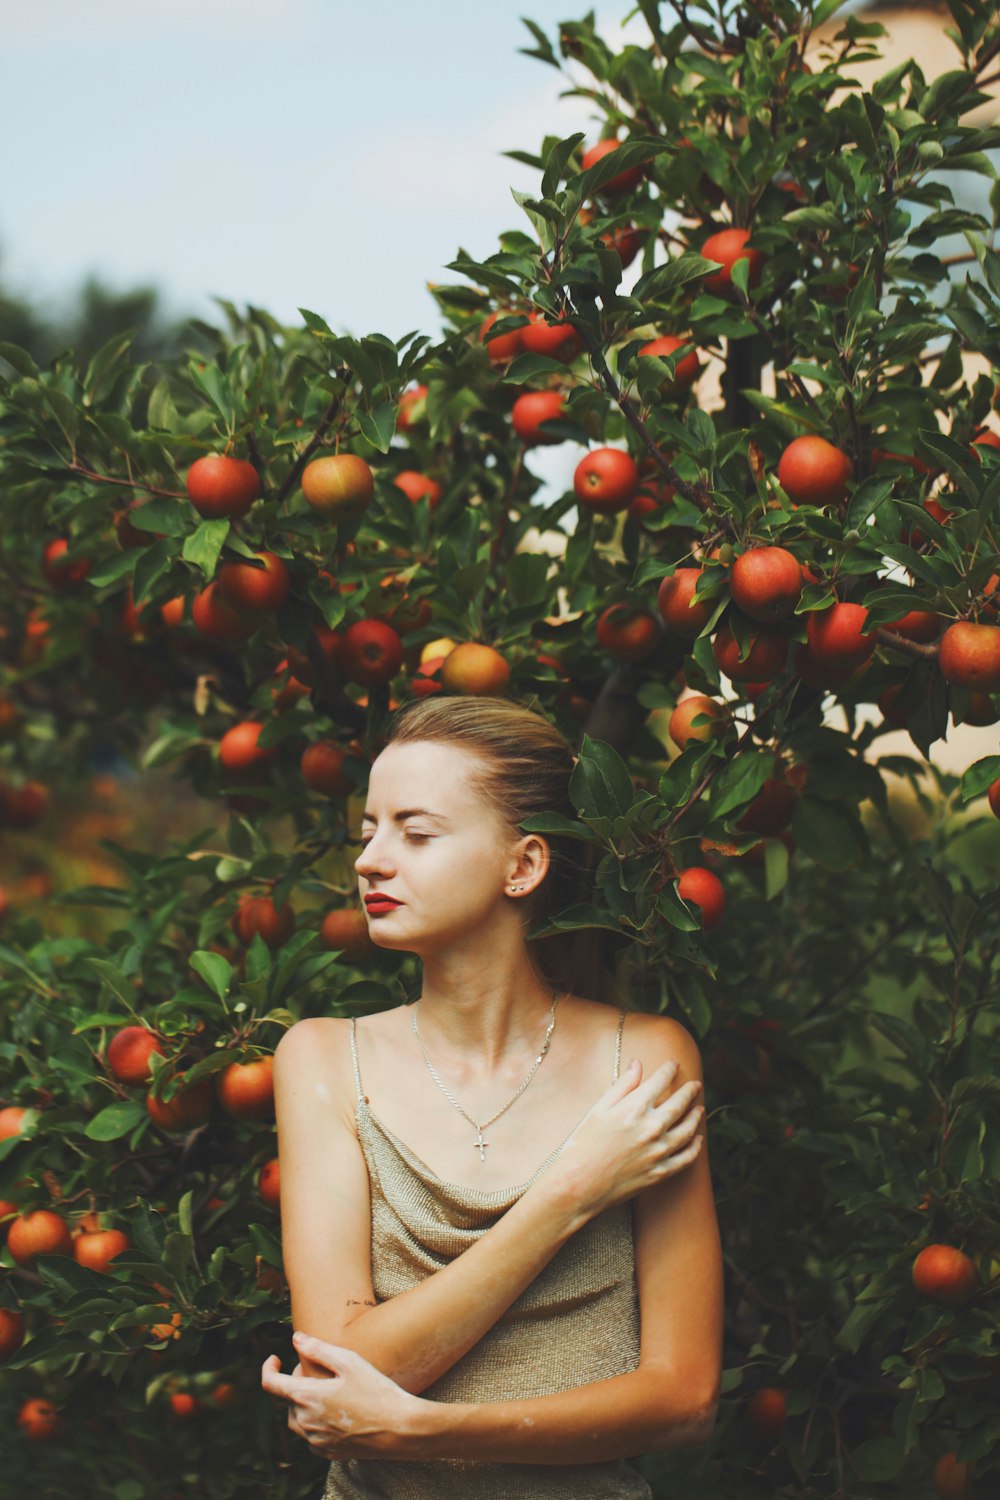 오렌지와 함께 나무 앞에 서있는 여자